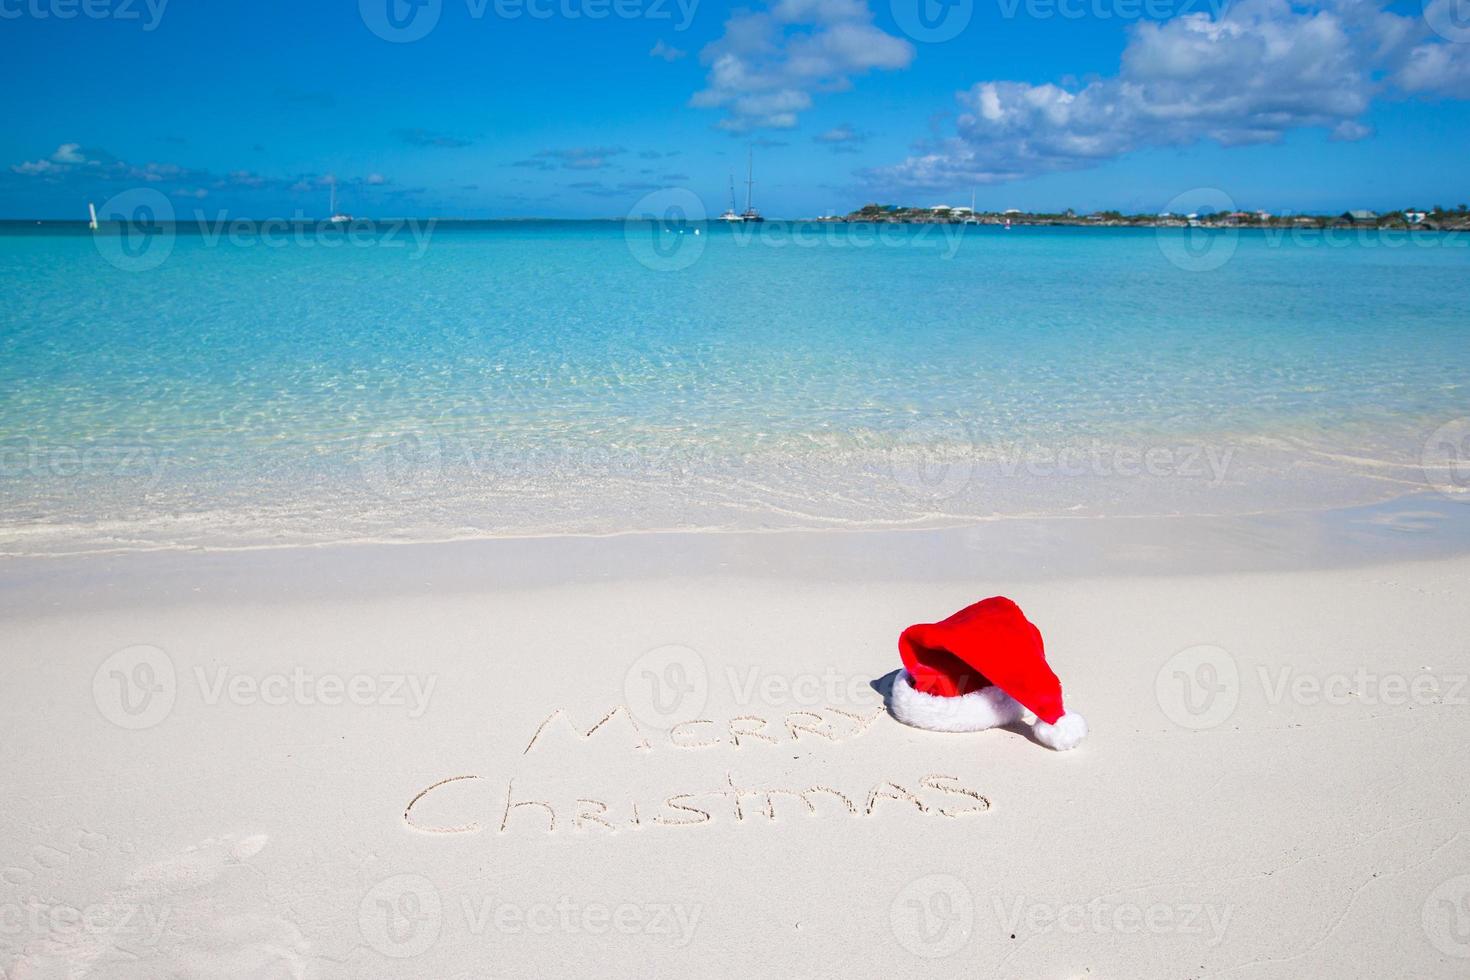 allegro Natale scritto su tropicale spiaggia bianca sabbia con natale cappello foto